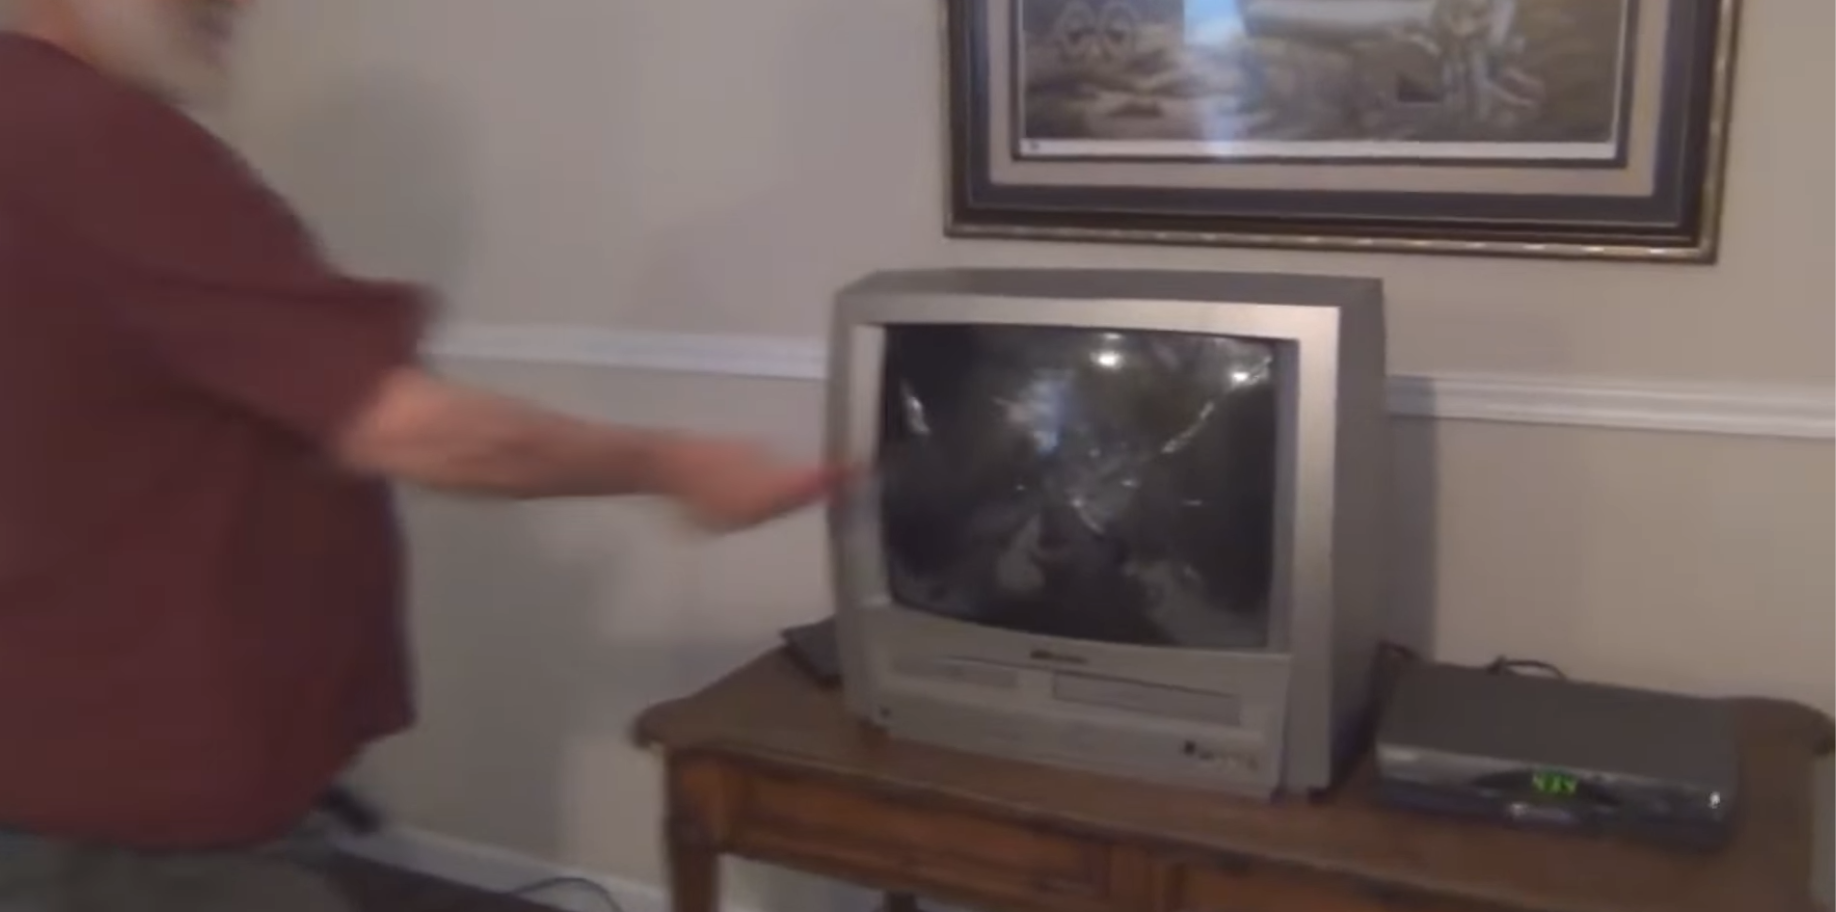 Дед сломал телевизор. Телевизор с плоскогубцами. Злой дед разбил телевизор.